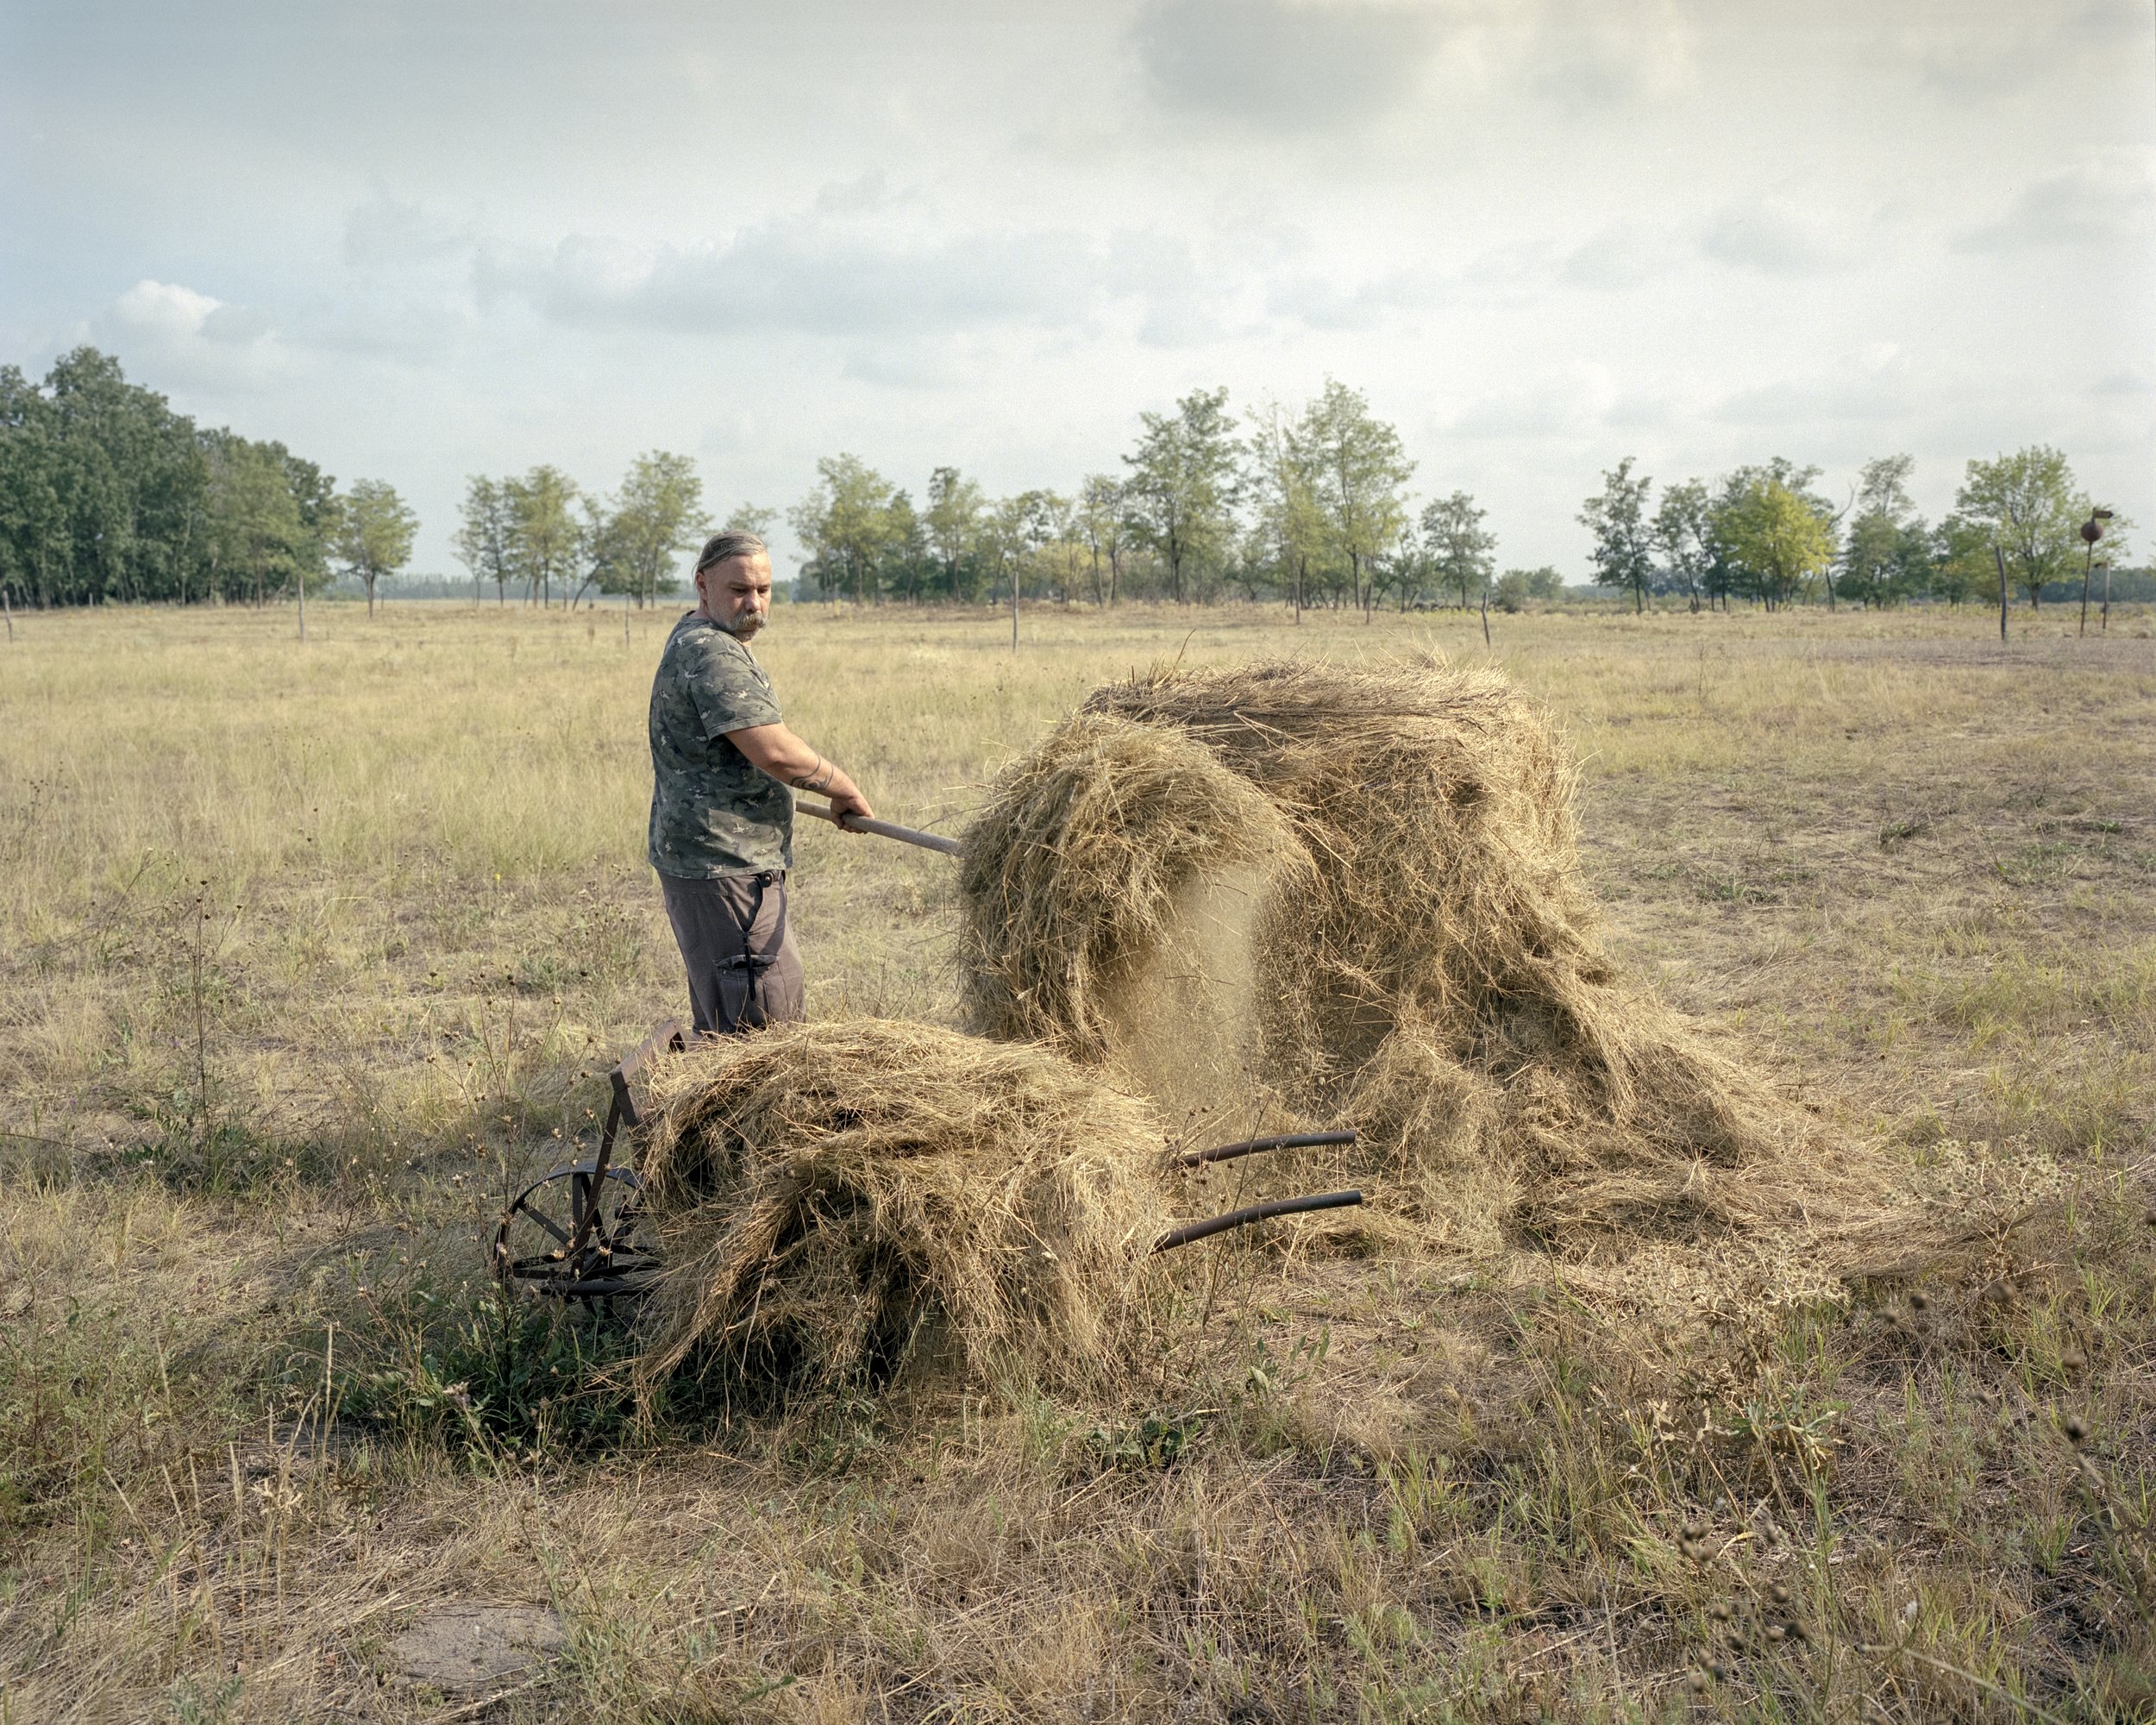  László Kulcsár preparing food for his horses. Fields were not mowable this year due to early drought.Jásszentlászló, Hungary, 2022 